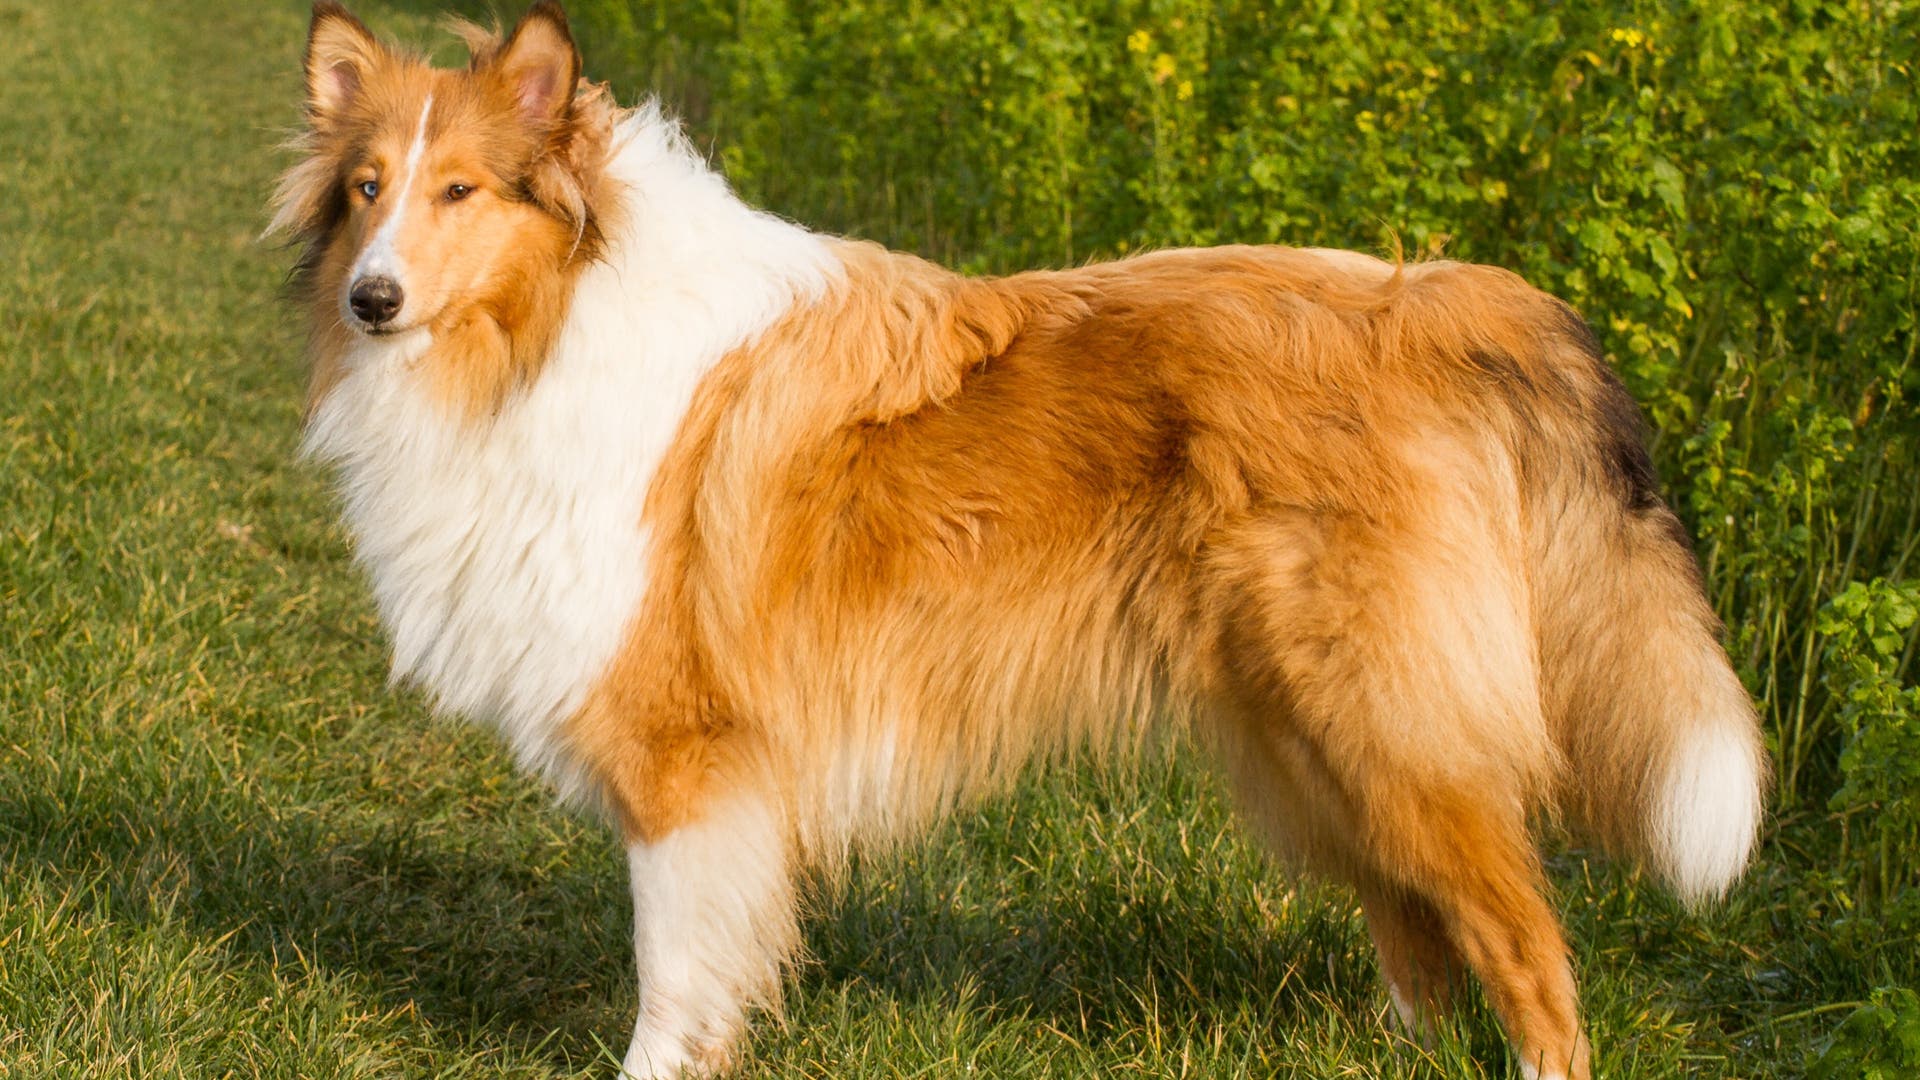 Filmhündin Lassie Collies beliebt Spektrum der Wissenschaft